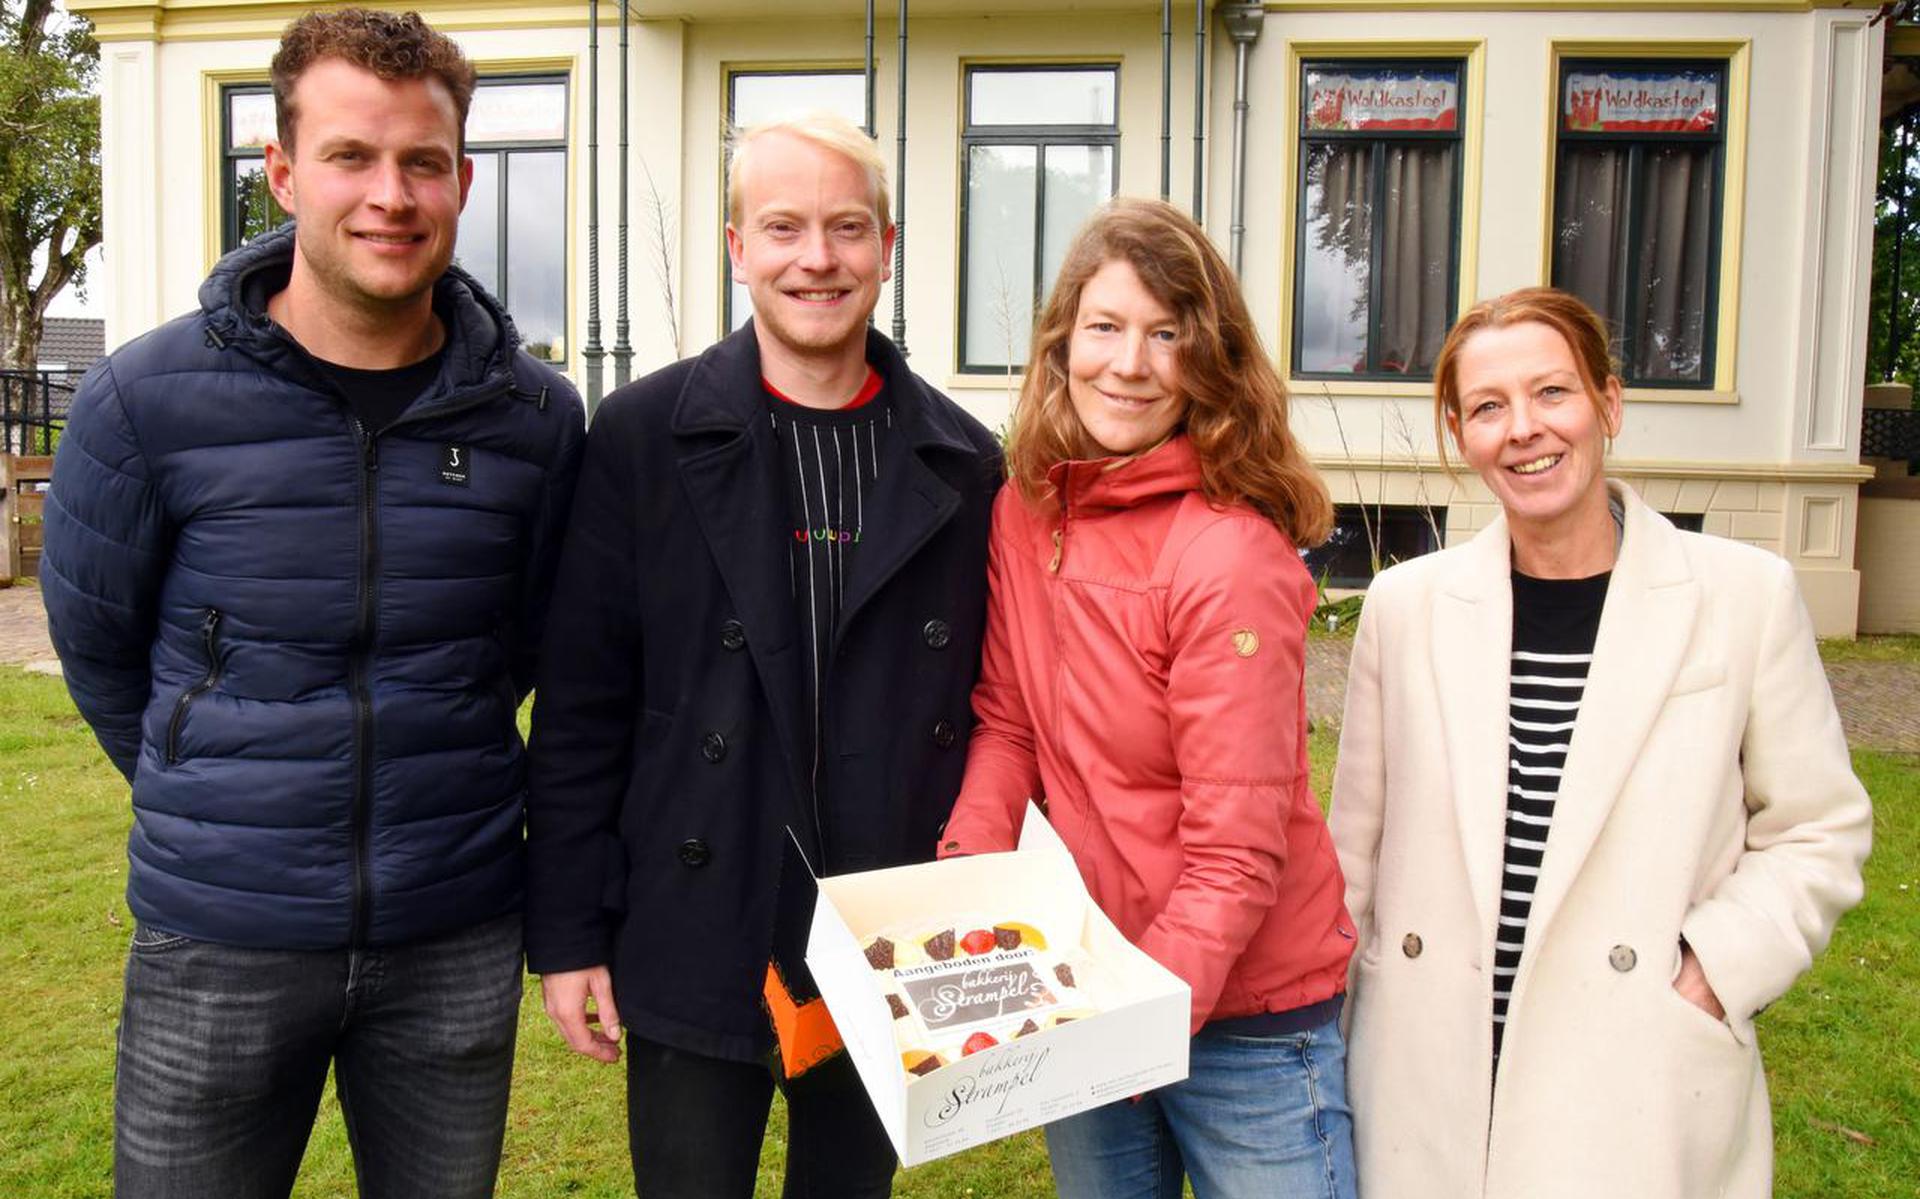 Fleur (met taart) en haar collega’s Stefan, Wouter en Jacqueline werden verrast met de Taart van de Week.